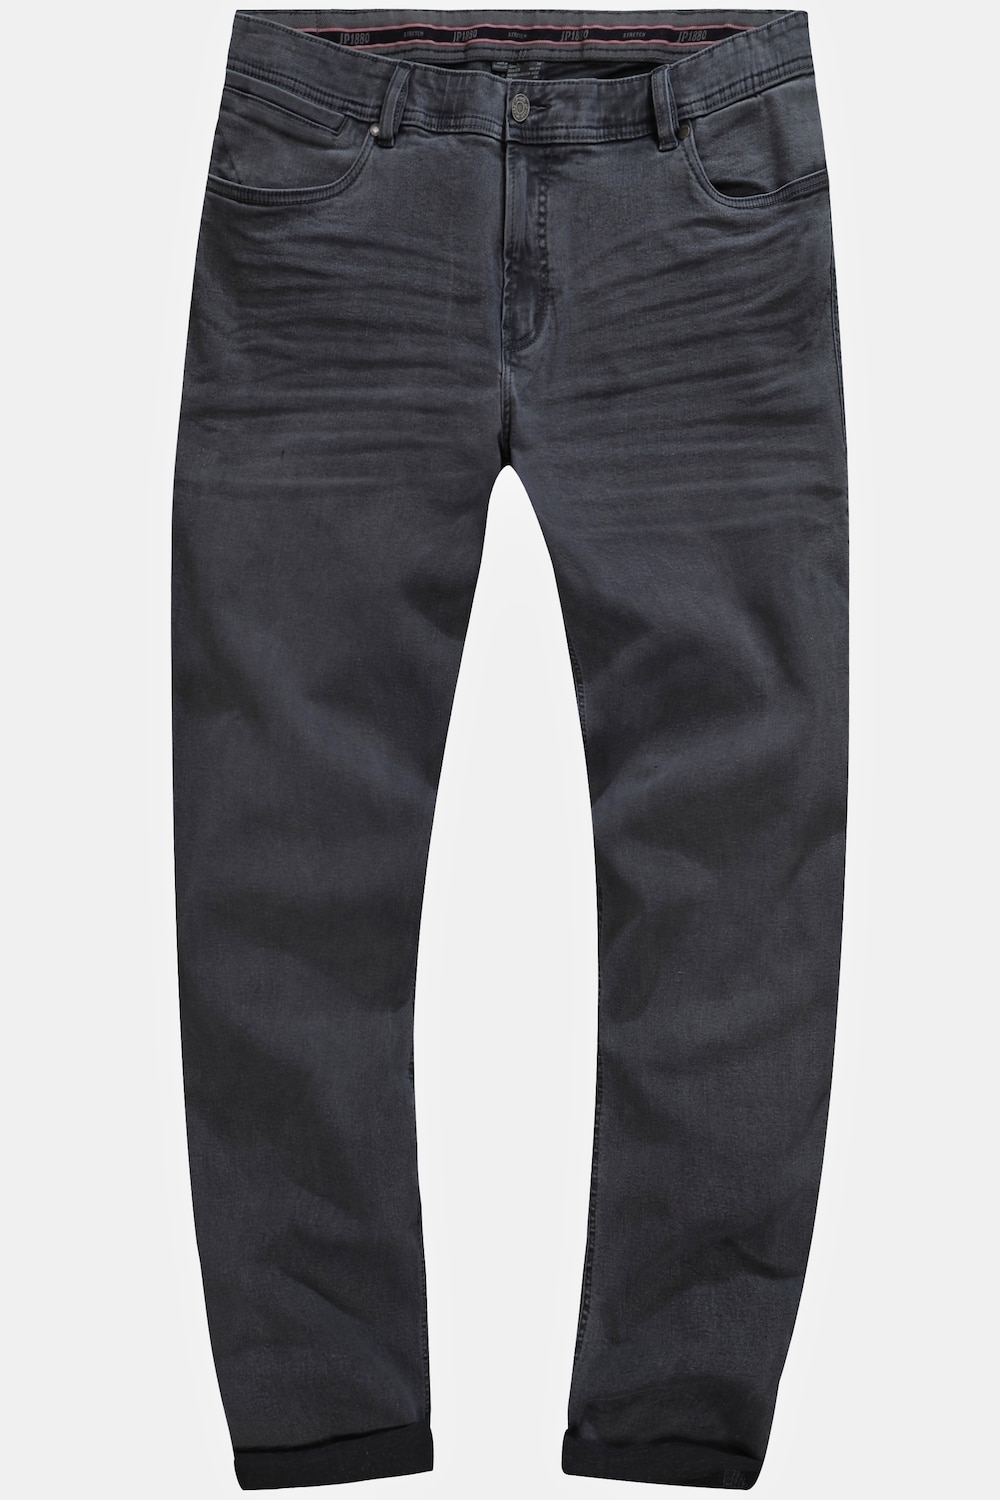 Grote Maten Jeans, Heren, grijs, Maat: 58, Katoen, JP1880